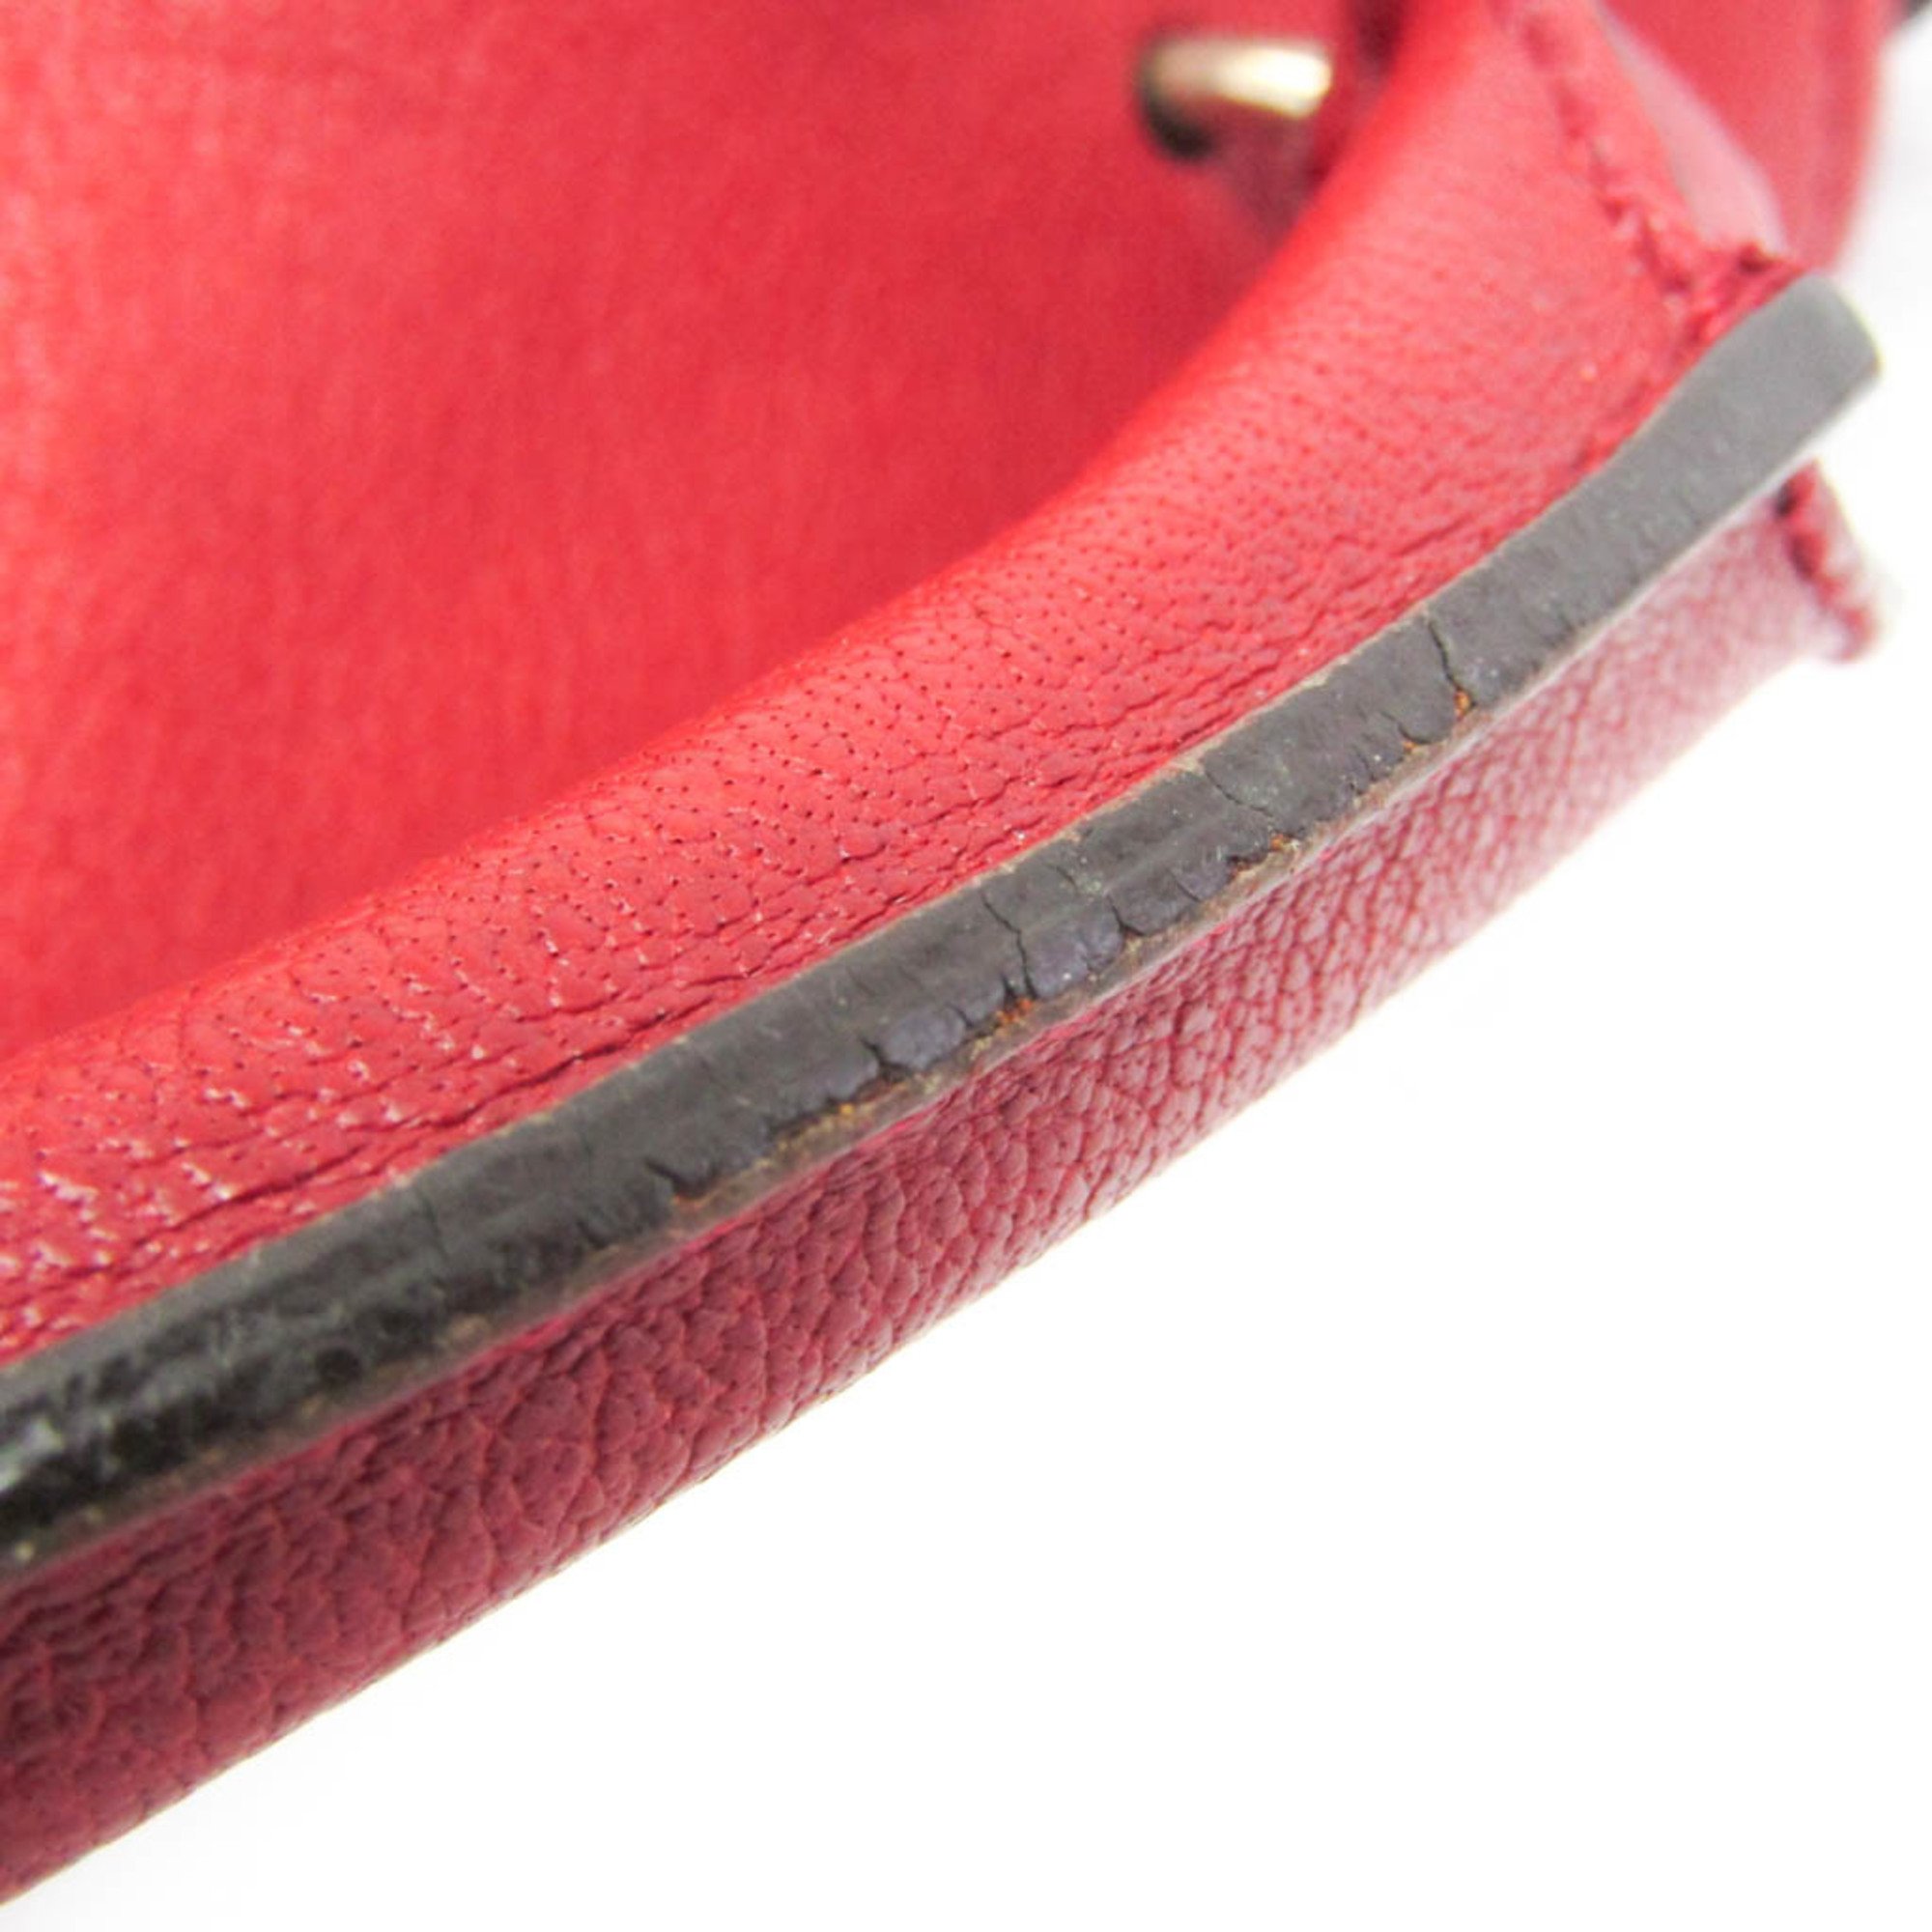 Chloé Elsie Top Handle Women's Leather Handbag,Shoulder Bag Red Color